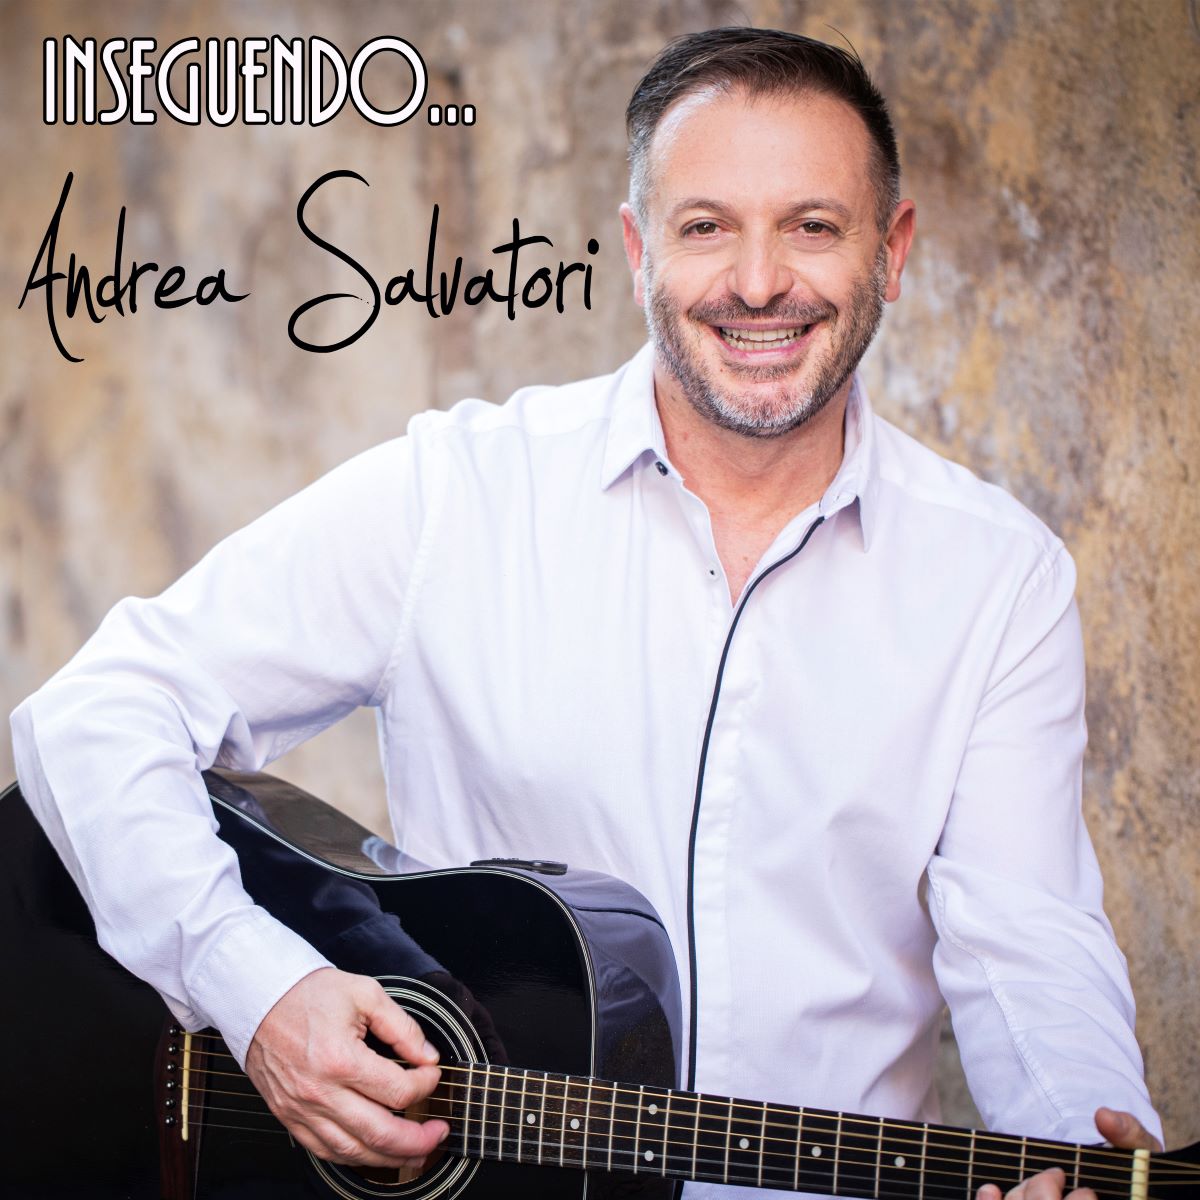 Andrea Salvatori - Il singolo “Inseguendo”